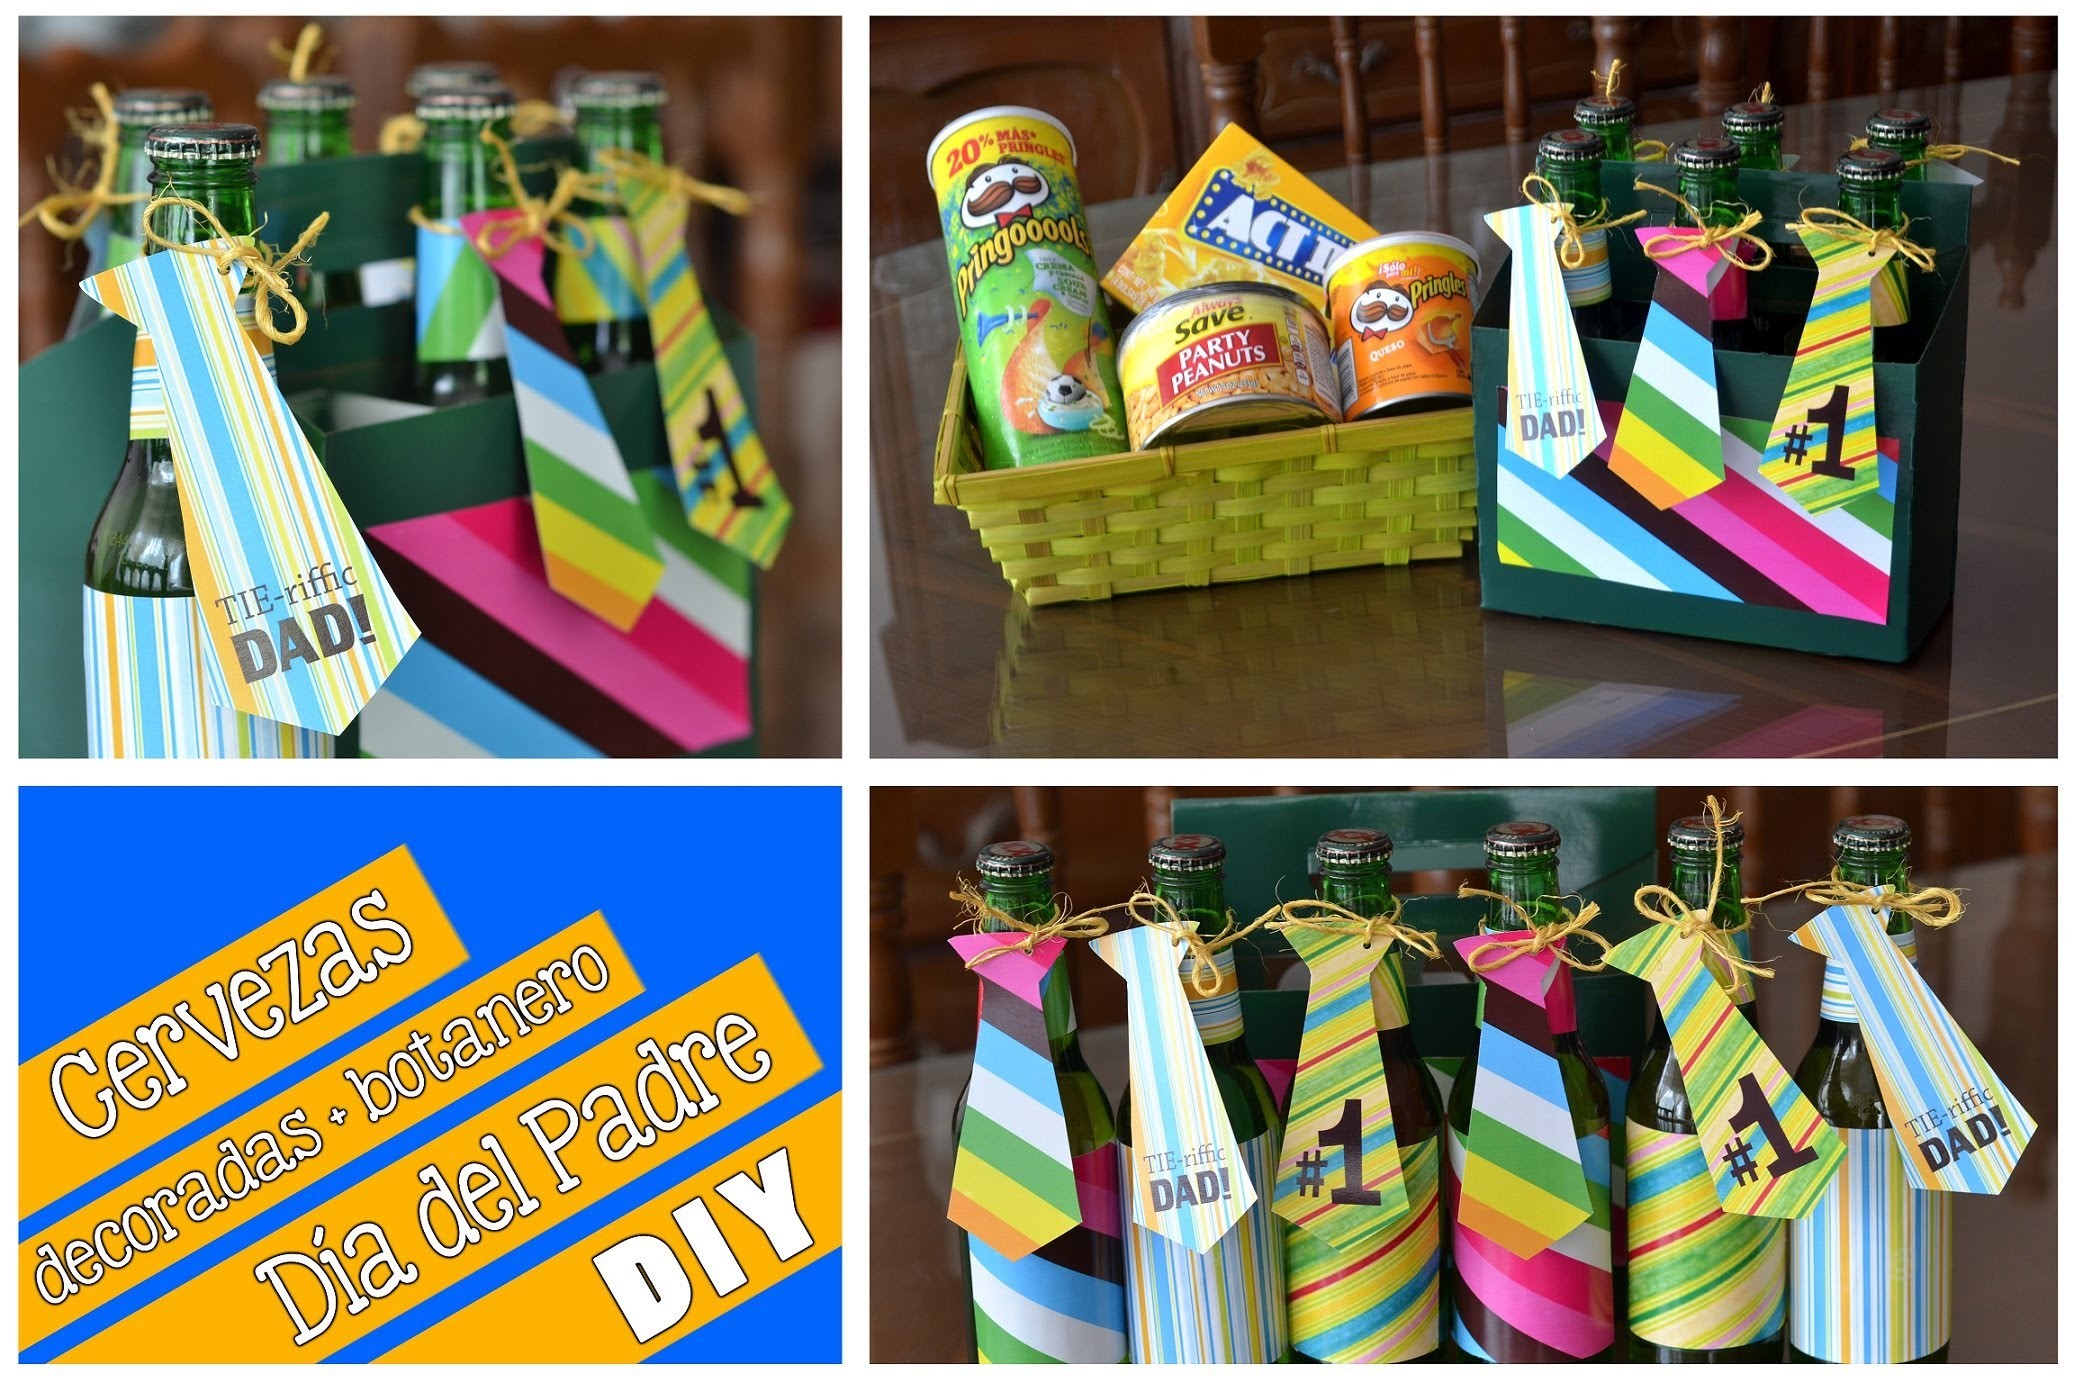 Cervezas decoradas y botanero (DIY) Día del Padre